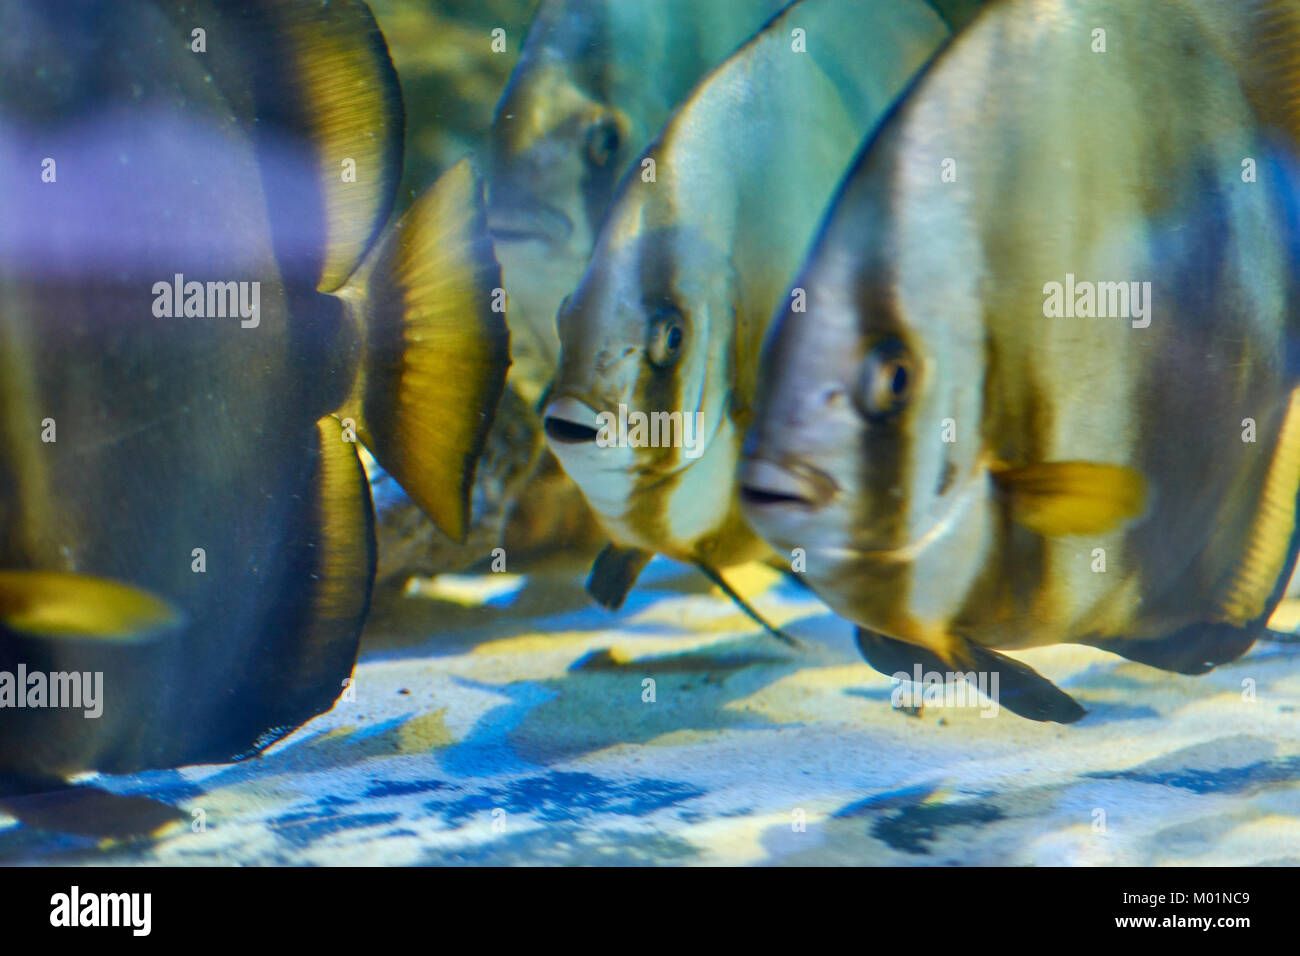 Diversi Teira batfishes nuoto vicino al fondo dell'acquario Foto Stock